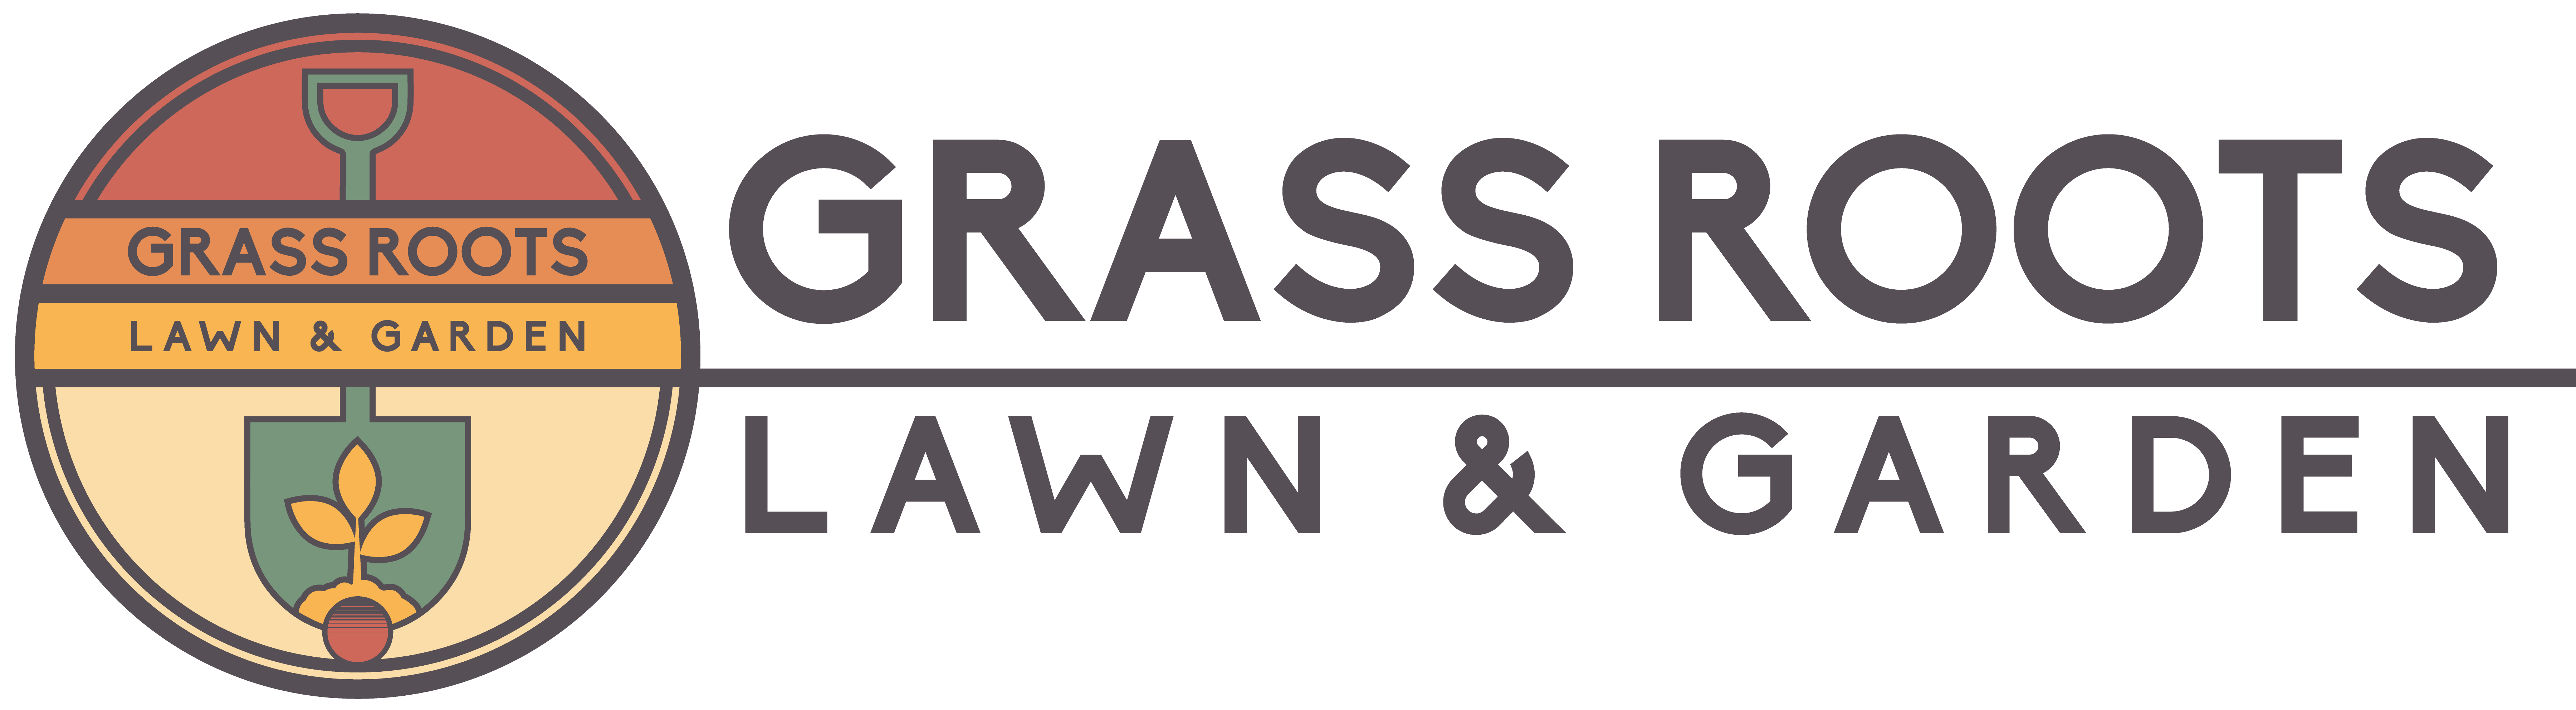 Grass Roots Lawn & Garden